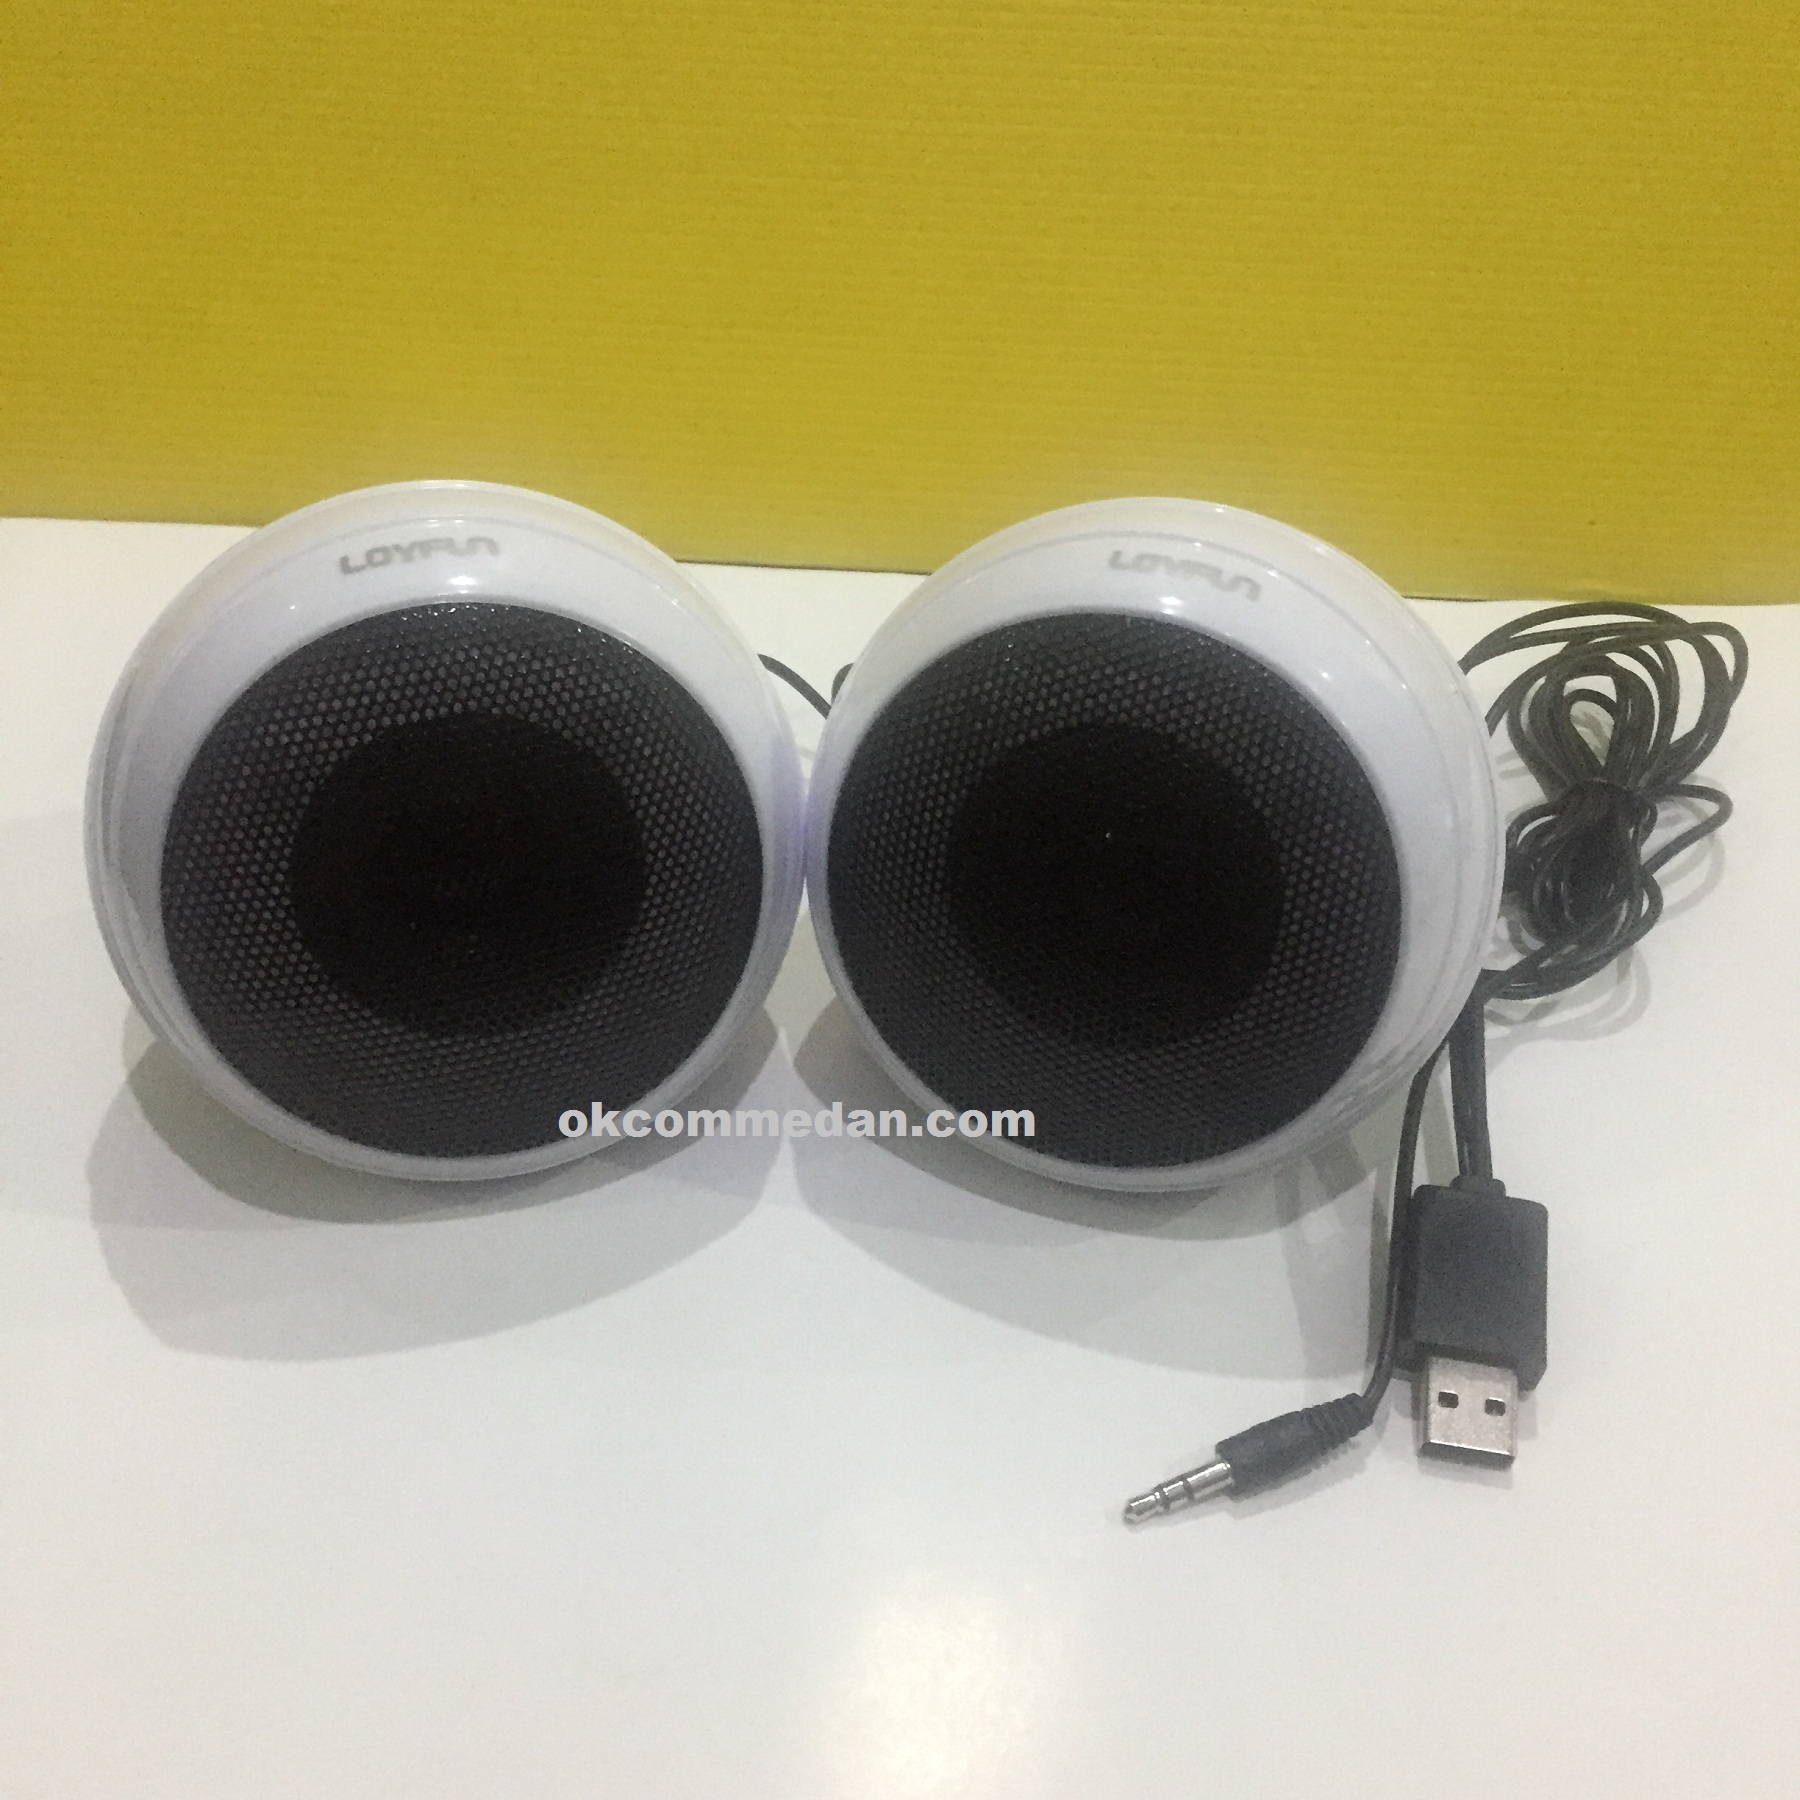 Jual Loyfun  LF 806 Speaker Multimedia murah berkualitas